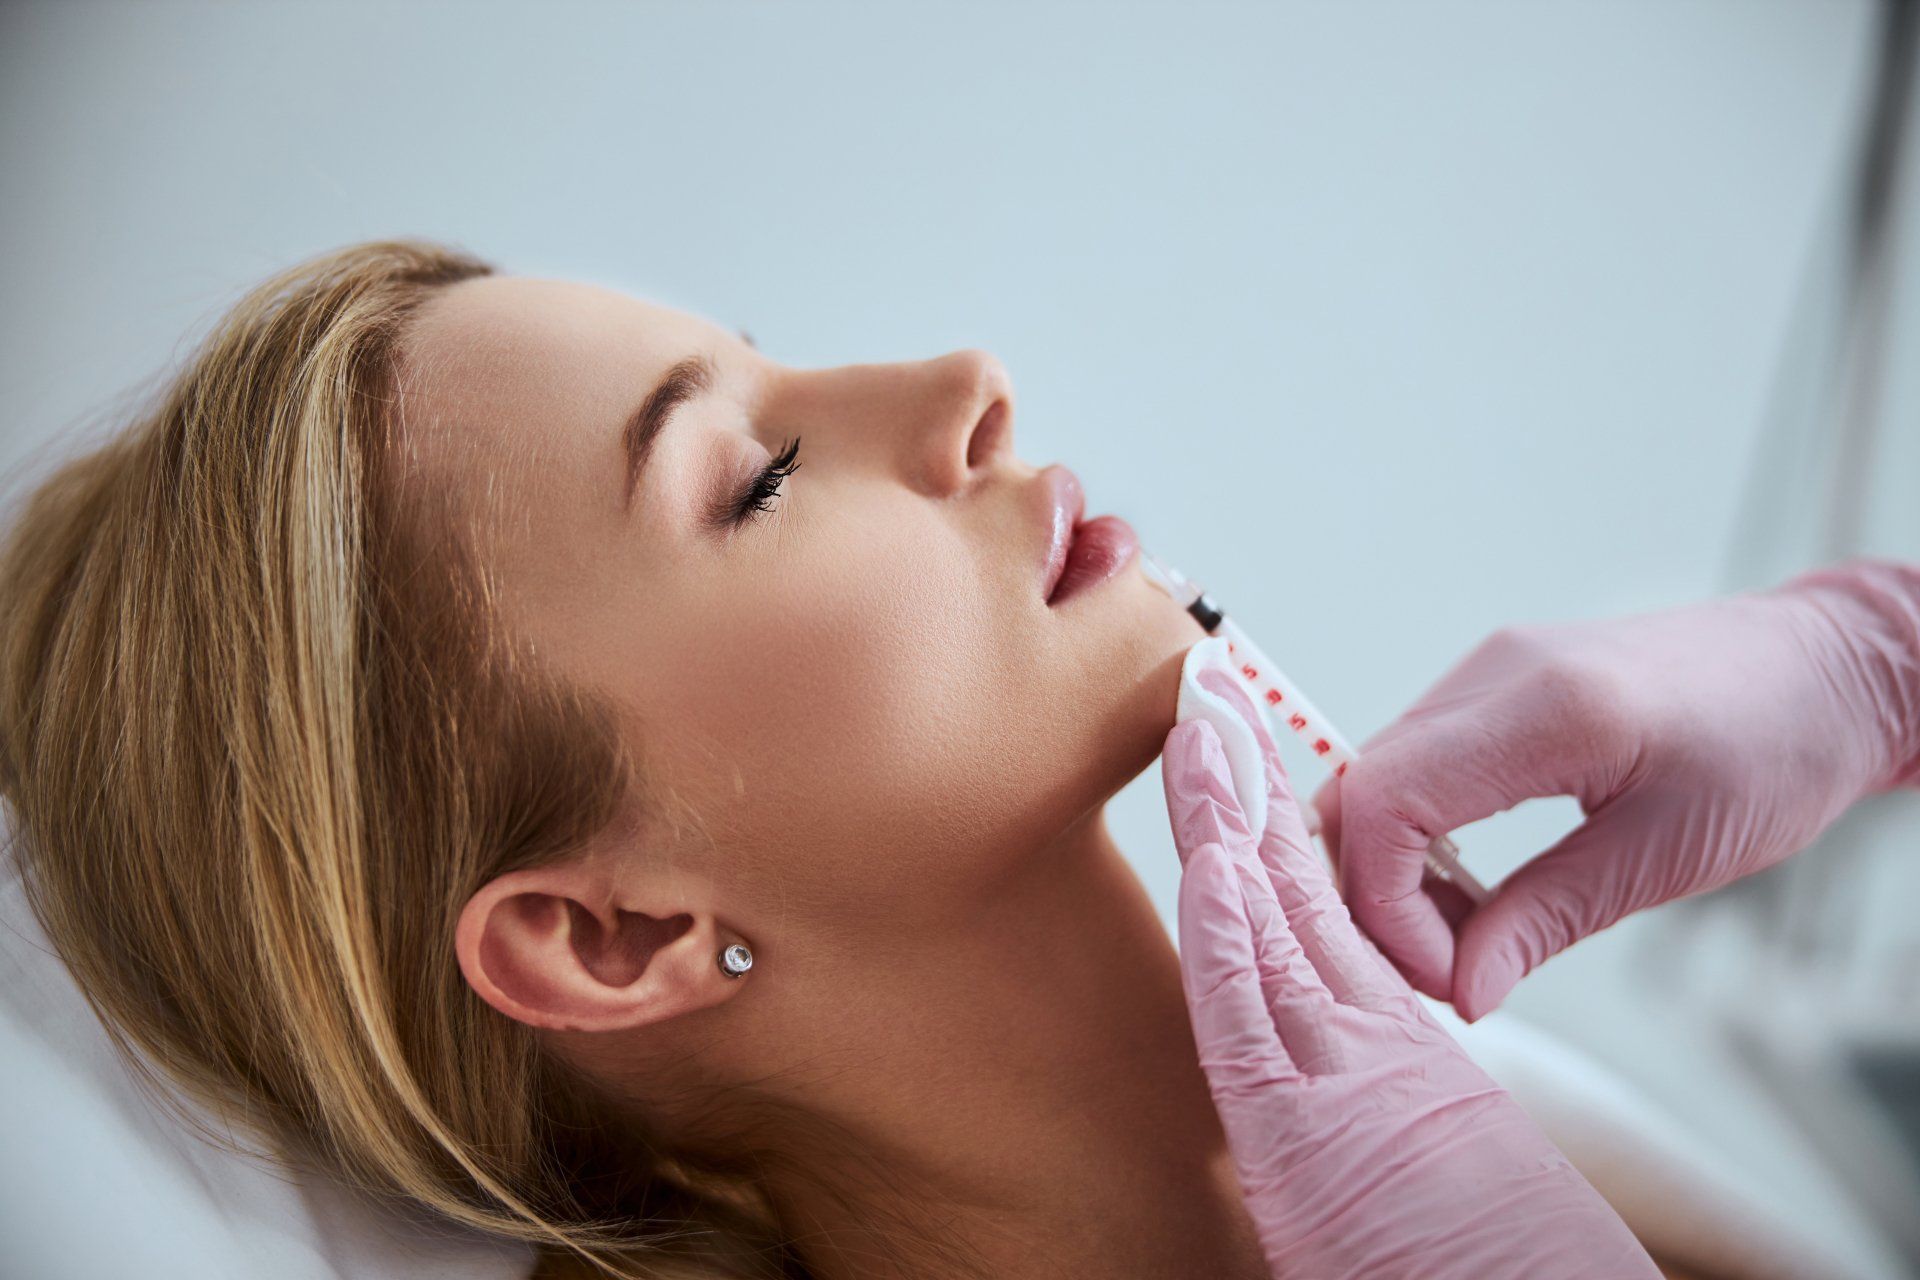 Woman receives dermal filler in lips